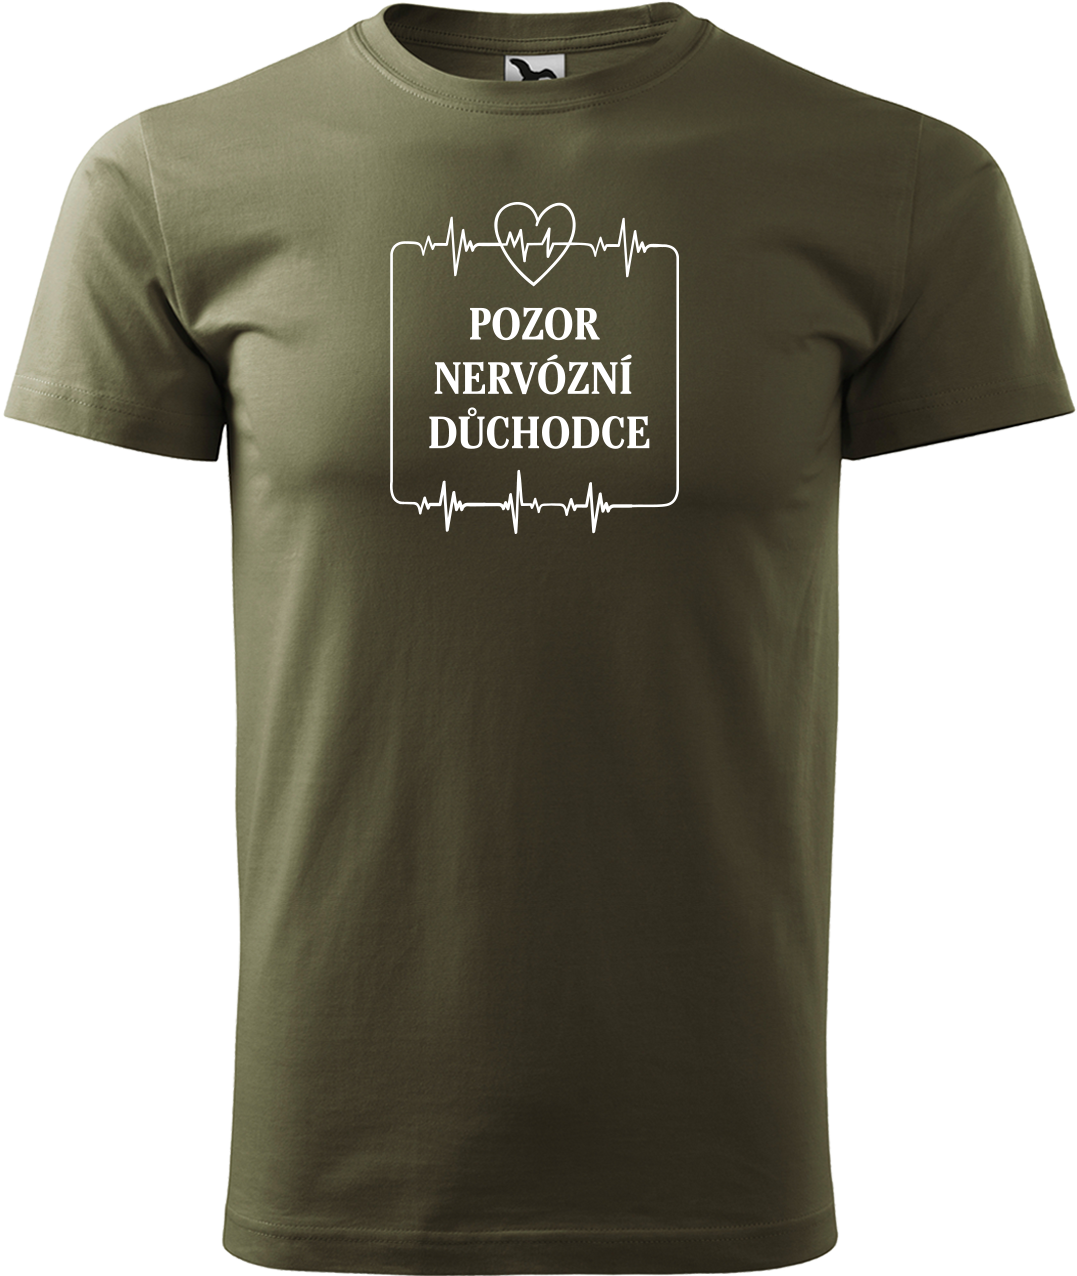 Vtipné tričko - Pozor nervózní důchodce Velikost: S, Barva: Military (69)